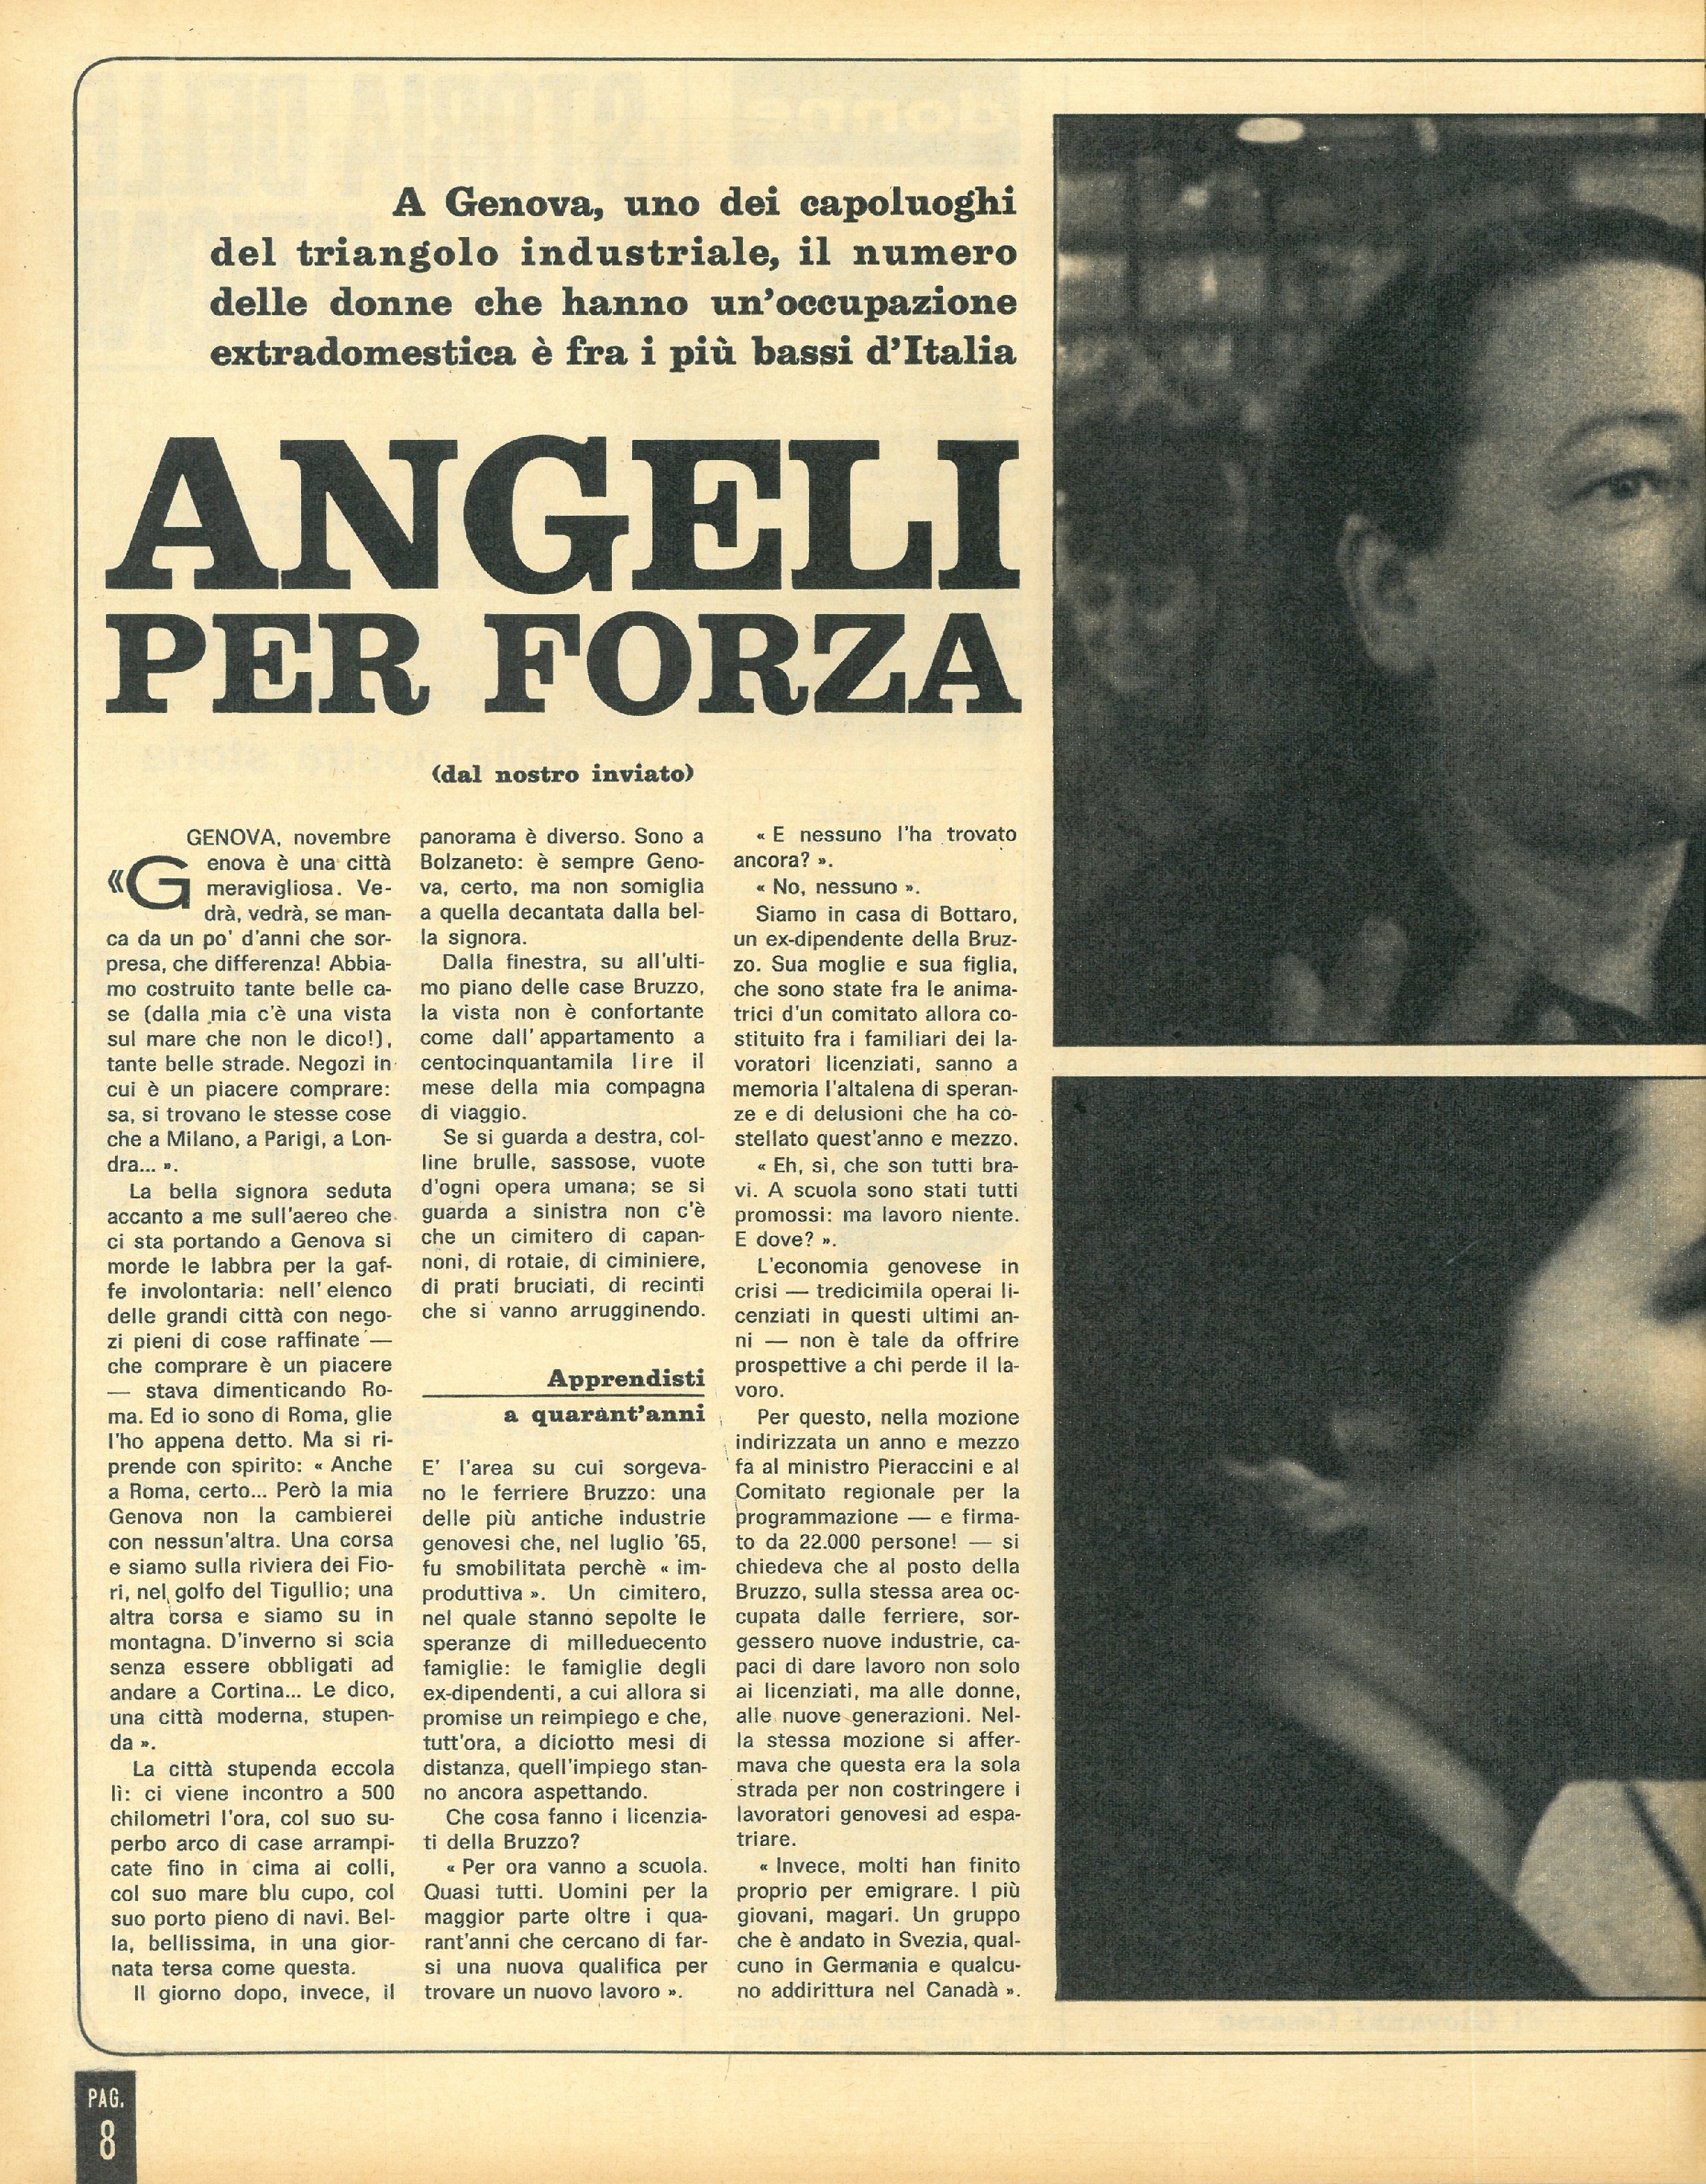 Foto: Angeli per forza. La situazione delle lavoratrici in Liguria